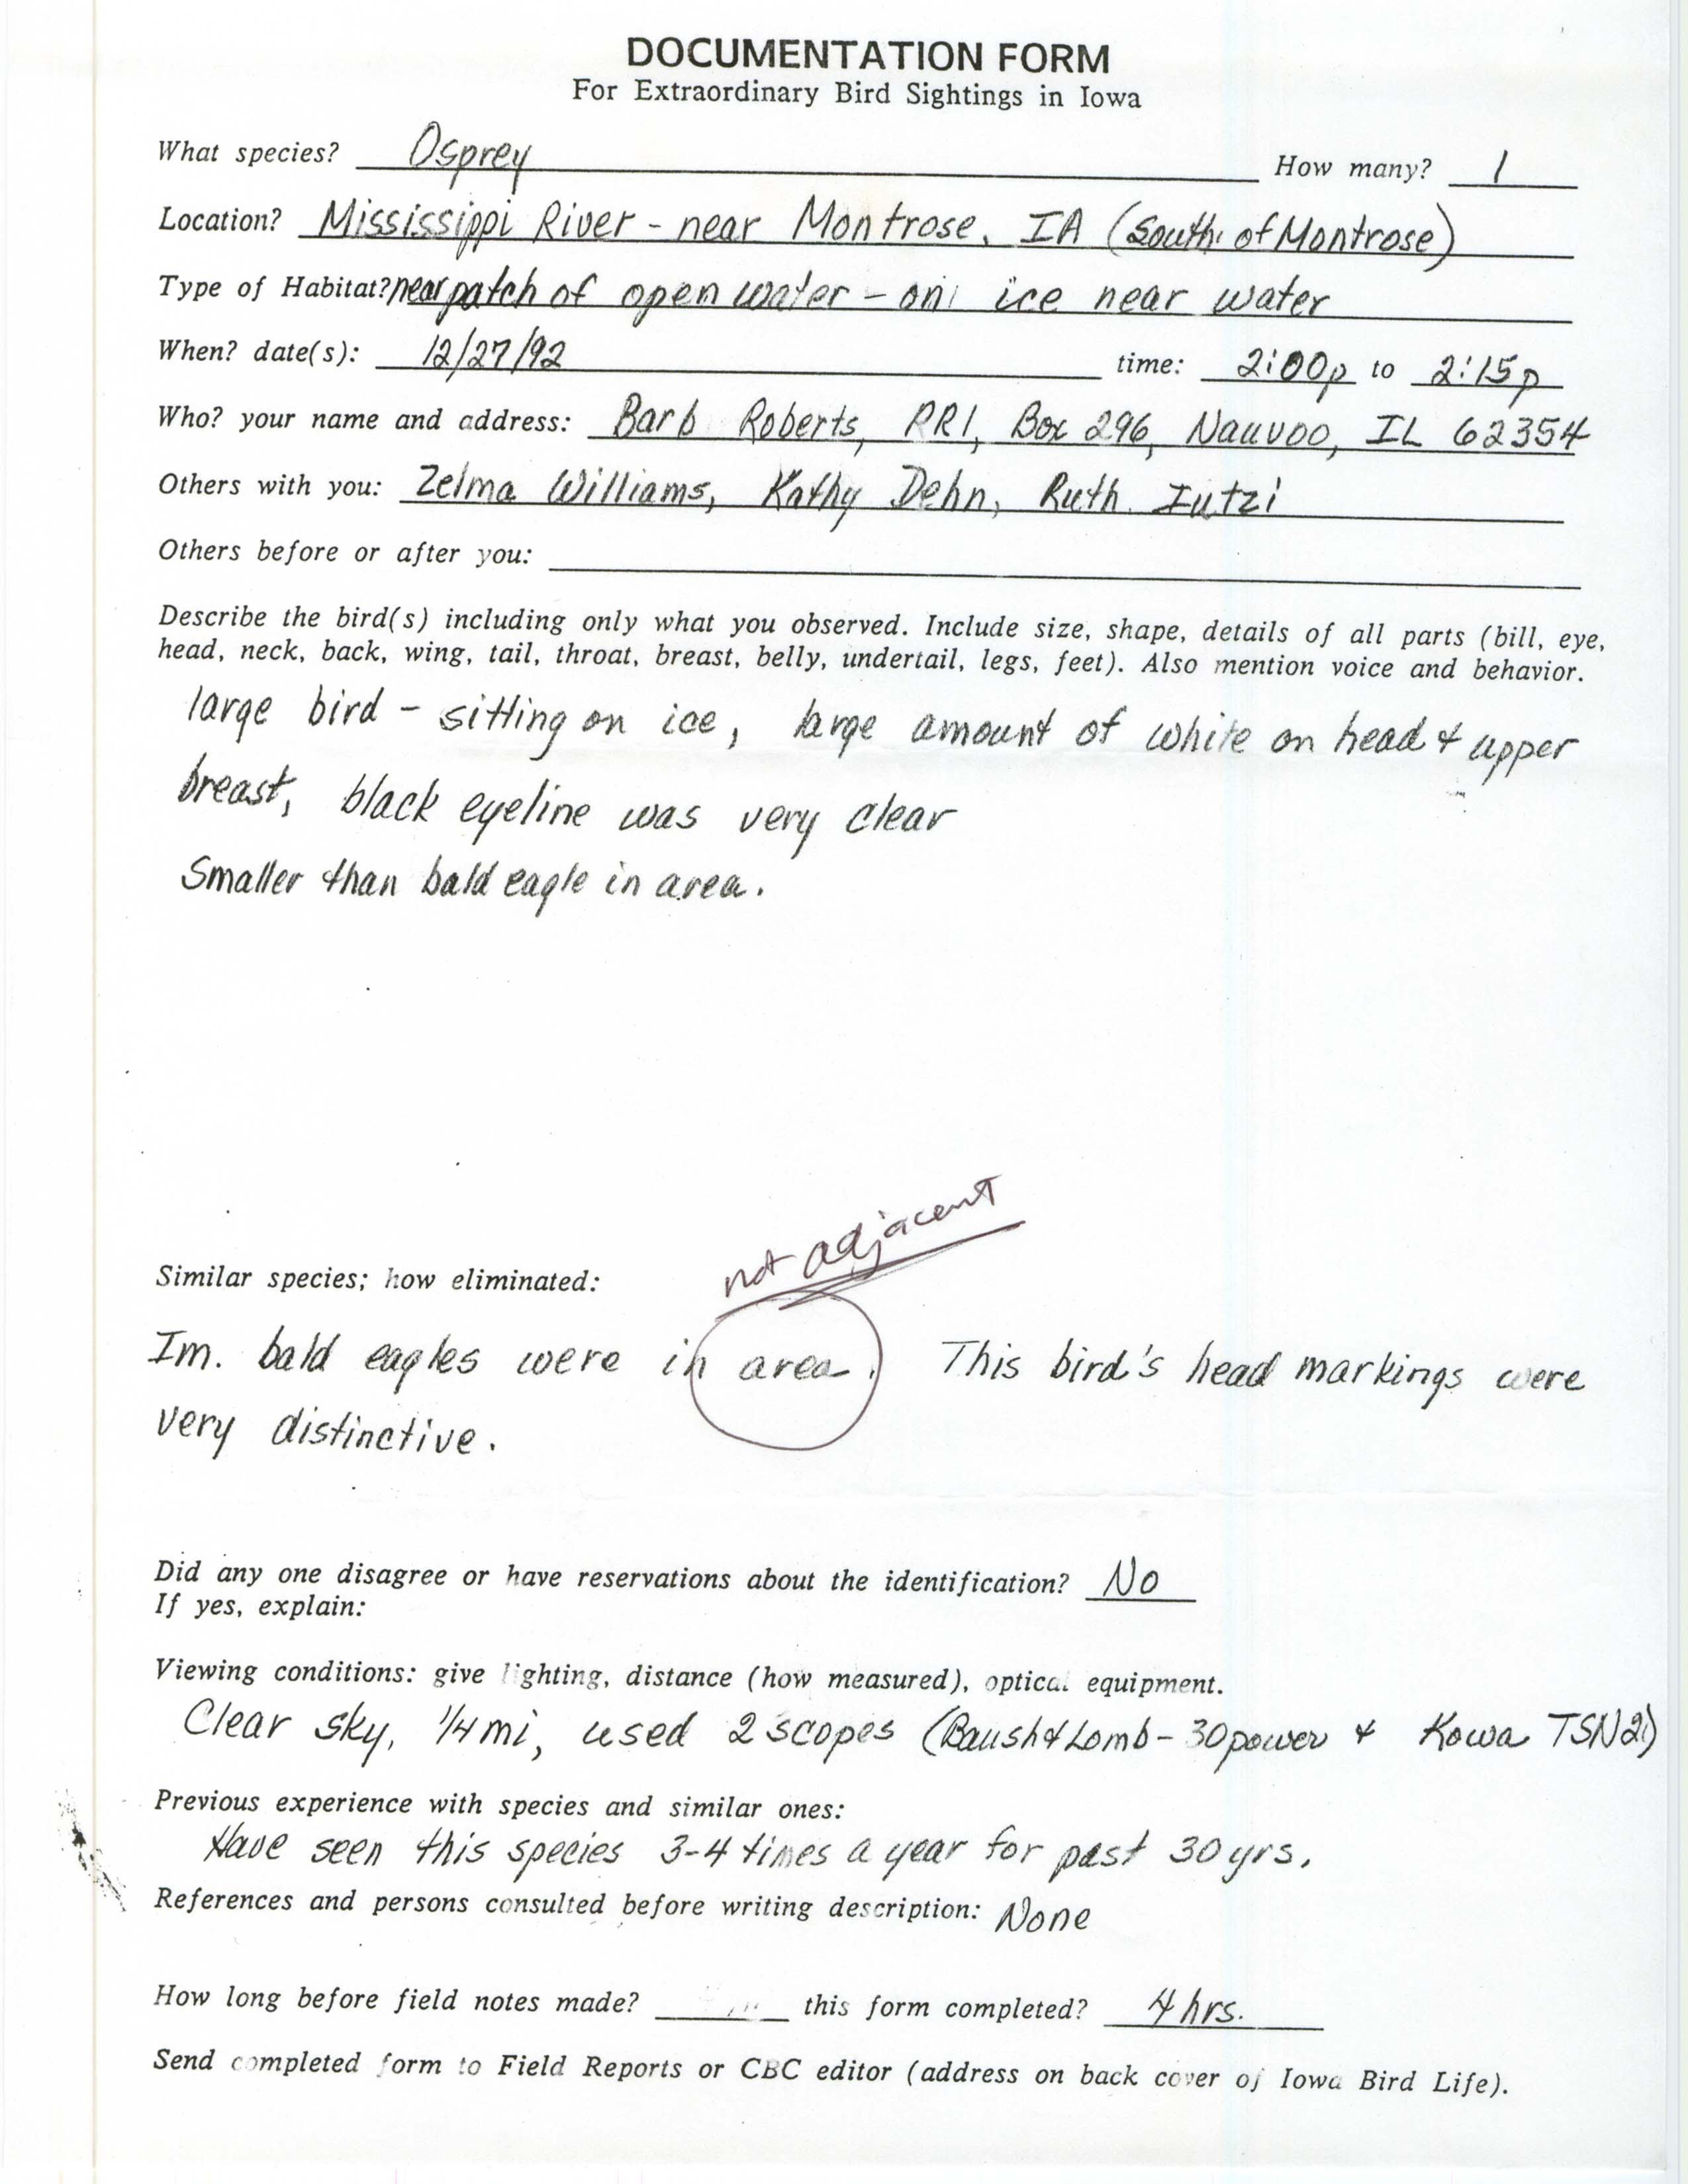 Rare bird documentation form for Osprey at Montrose, 1992